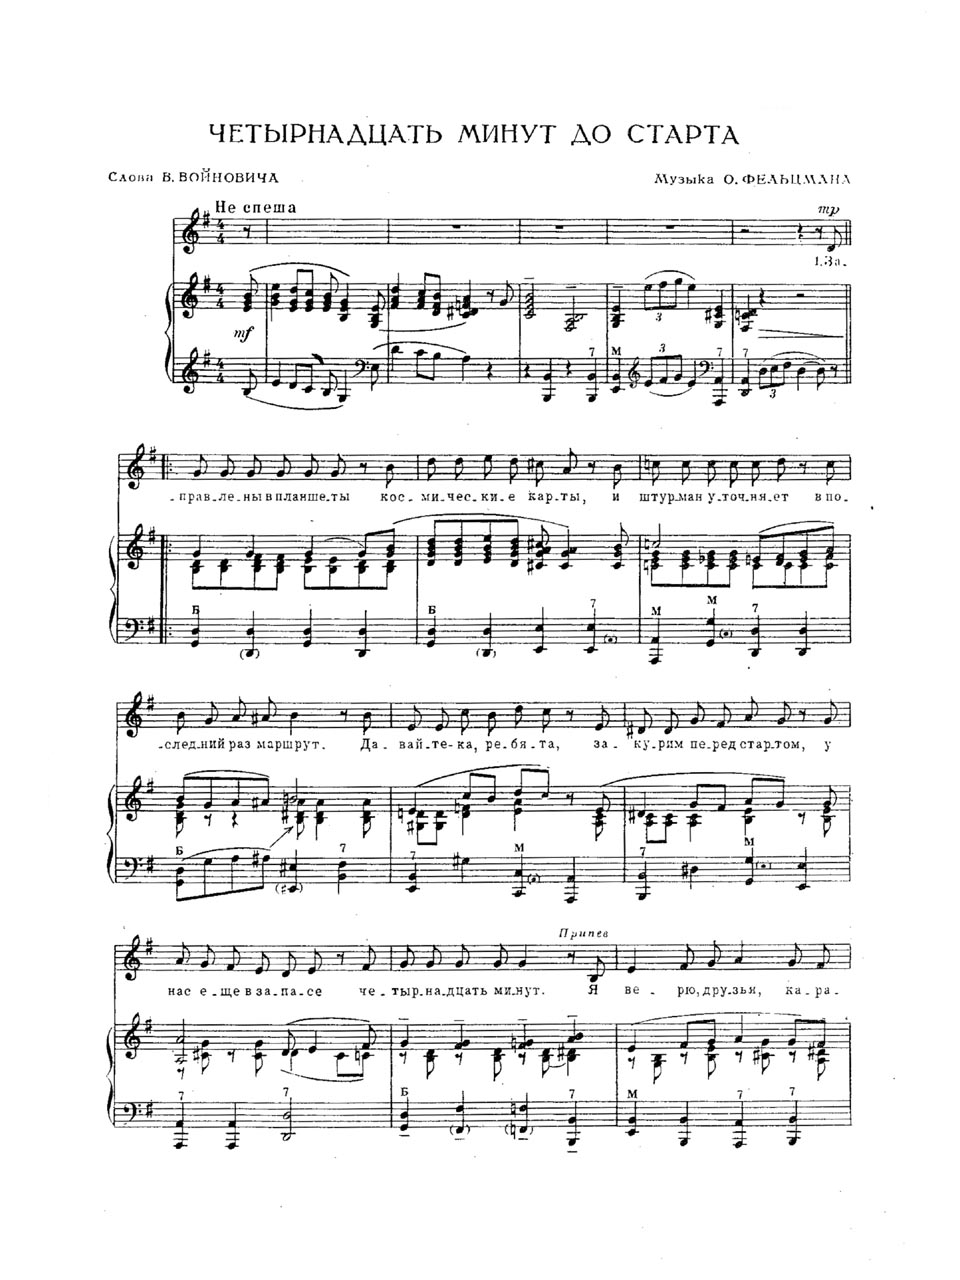 О. Фельцман, В. Войнович. 14 минут до старта. Ноты для голоса в сопровождении фортепиано (баяна)